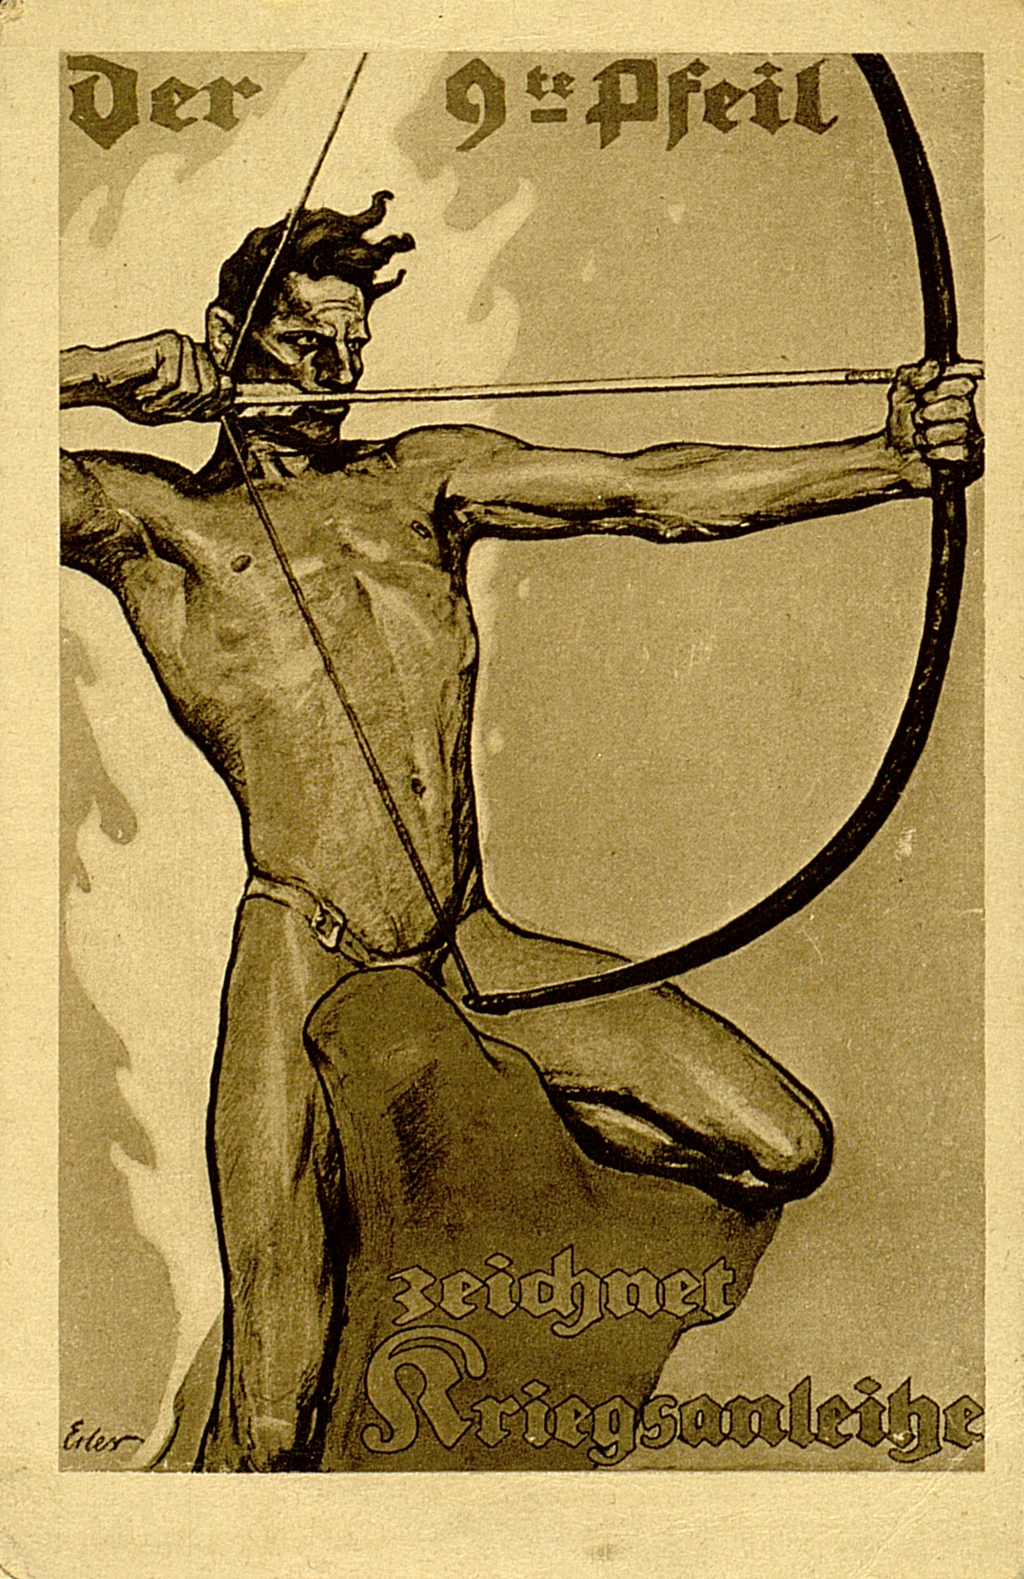 Postkarte mit Entwurf von Fritz Erler. Ein Mann im Slip sitzt auf einem seltsam geformten Stein mit fliegendem Haar und spannt einen Bogen. 